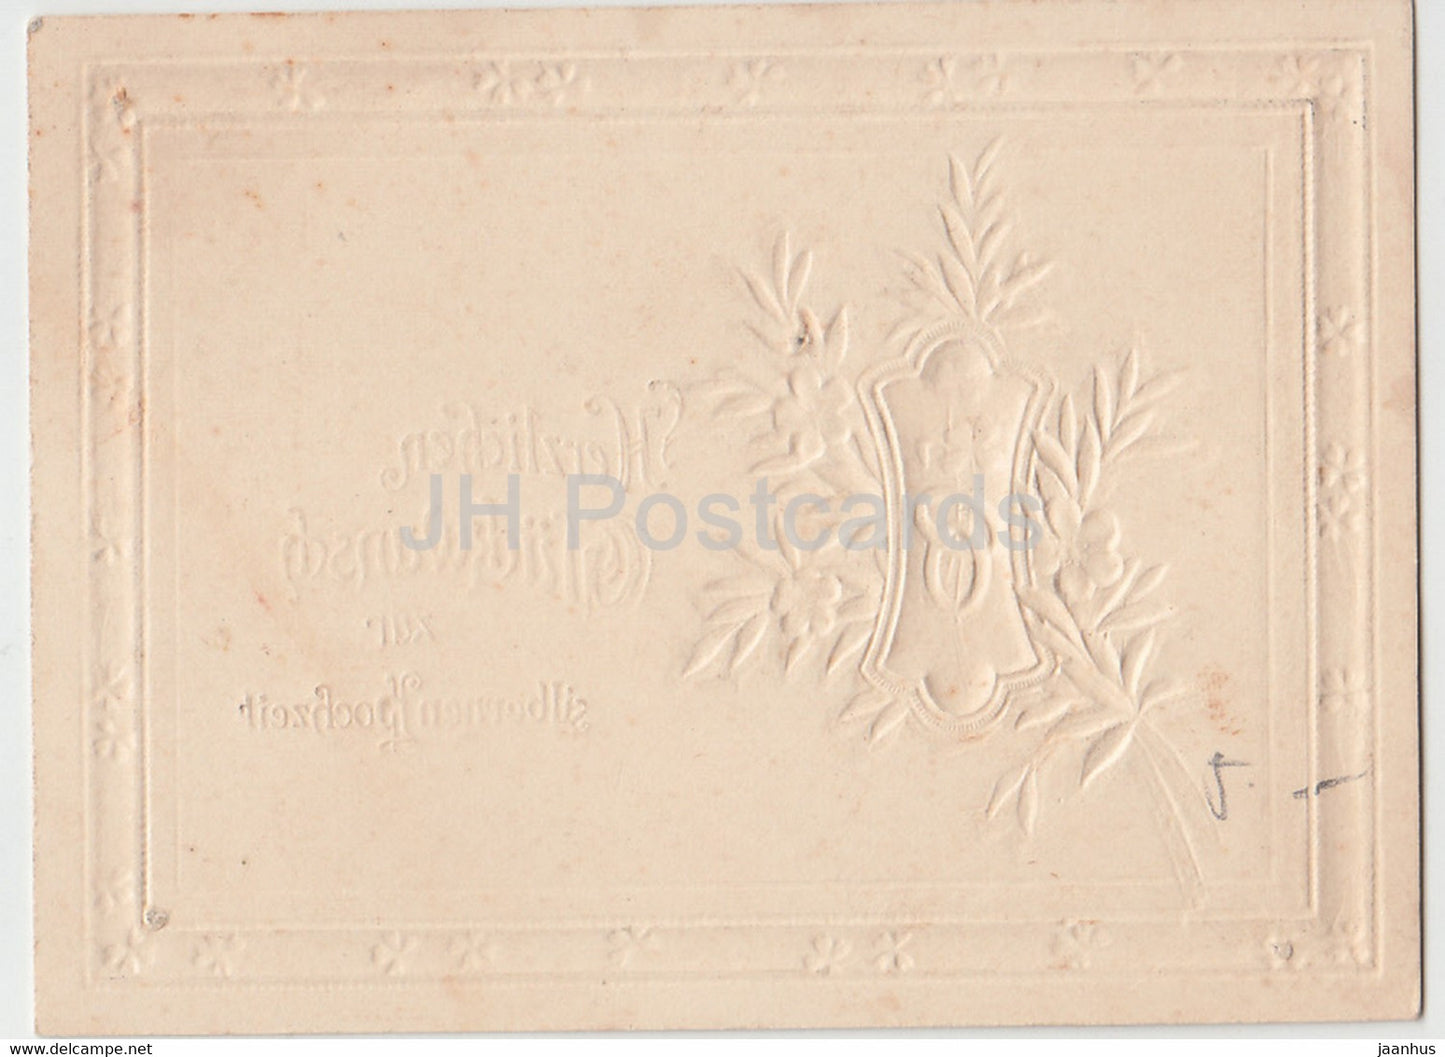 Mini Silver Weddings Greeting Card - Herzlichen Gluckwunsch zur silbernen Hochzeit - carte postale ancienne - Allemagne - inutilisée